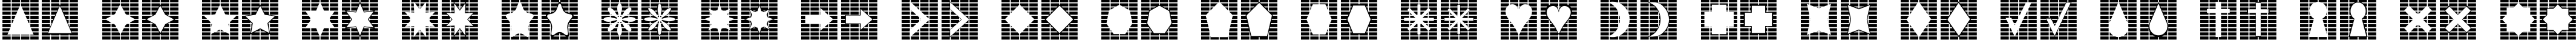 Пример написания английского алфавита шрифтом Grids n Things 2